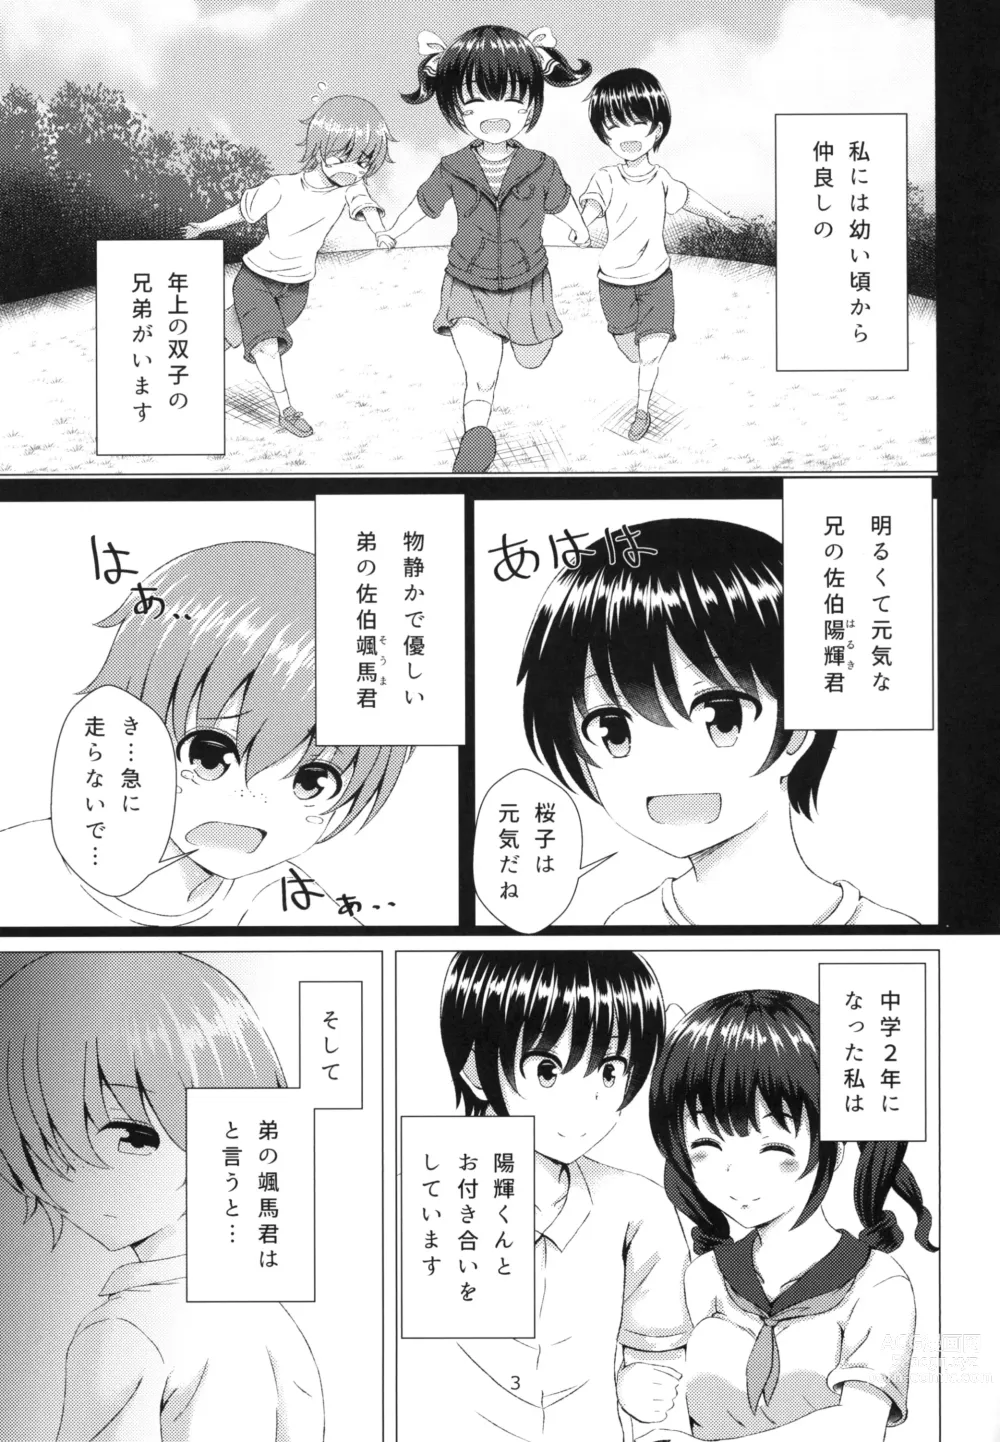 Page 3 of doujinshi Yuganda Koigokoro